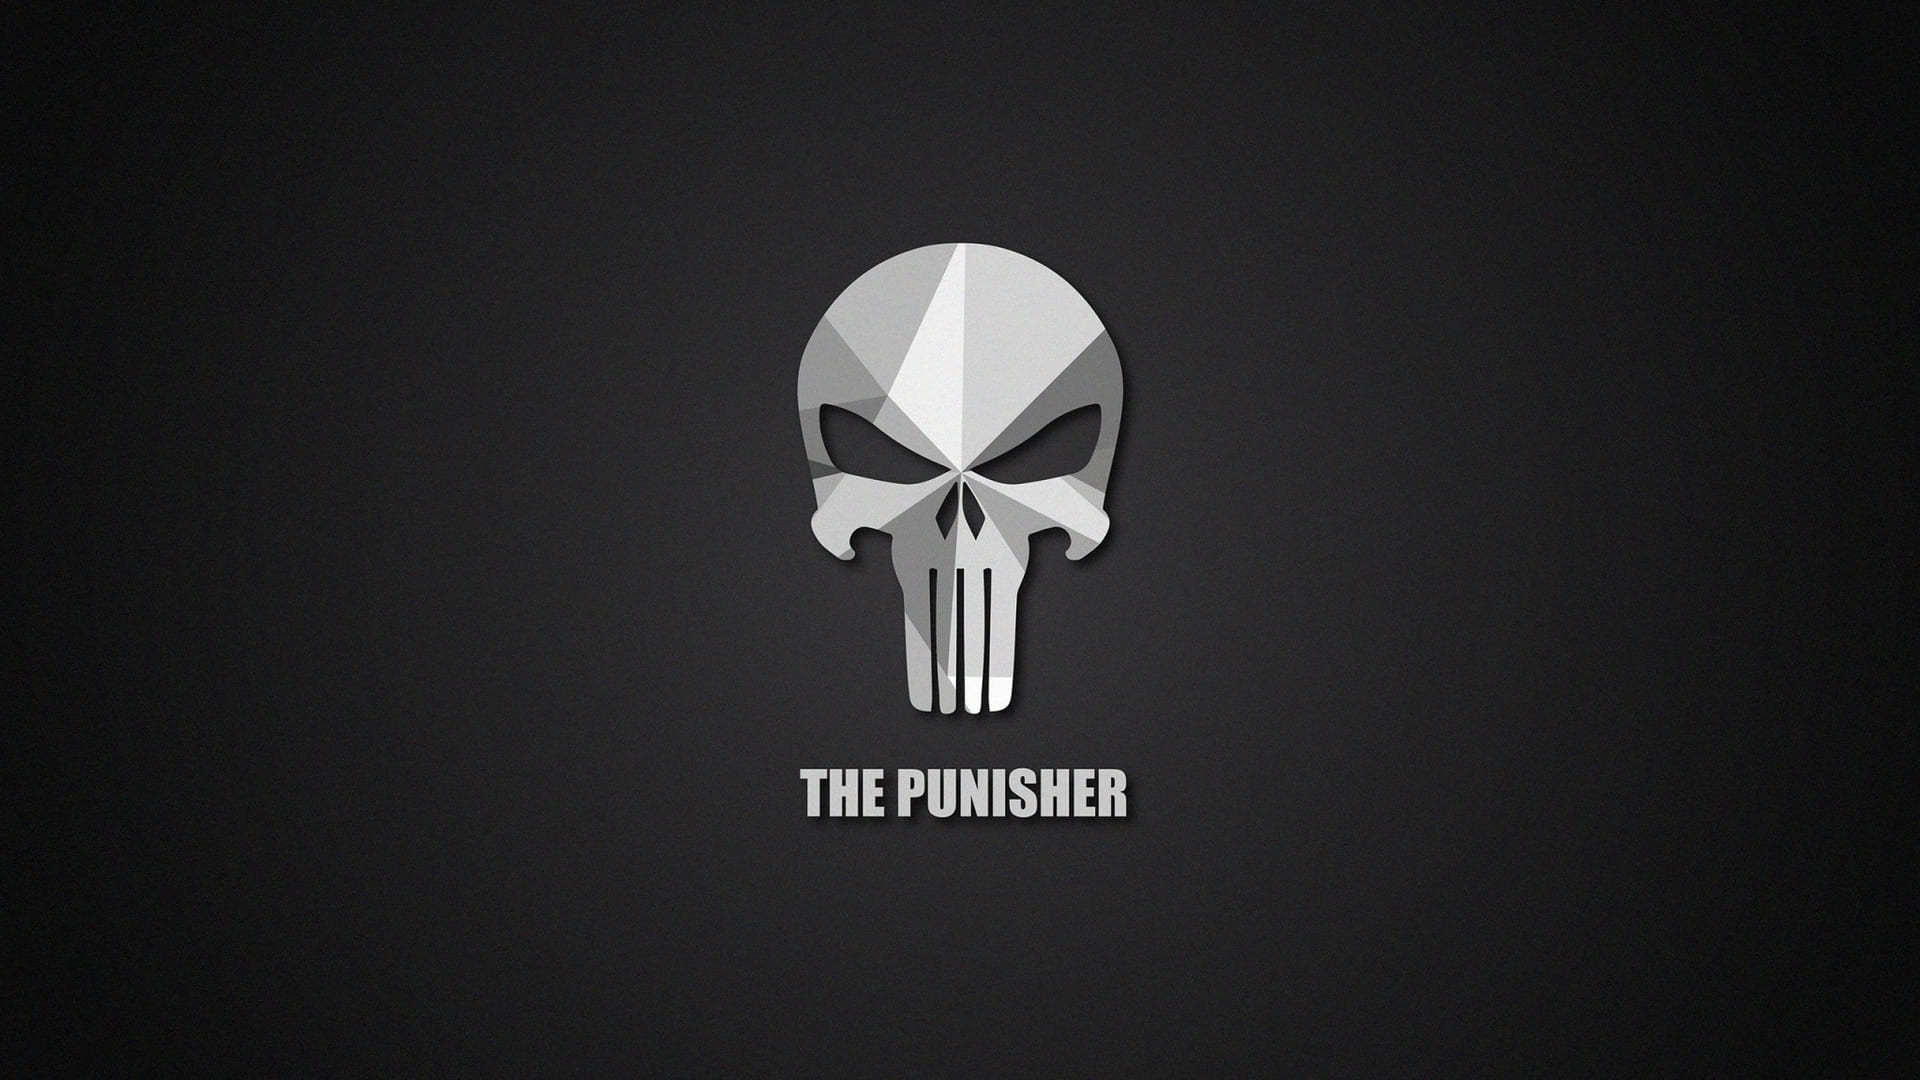 The Punisher Wallpaper For Desktop